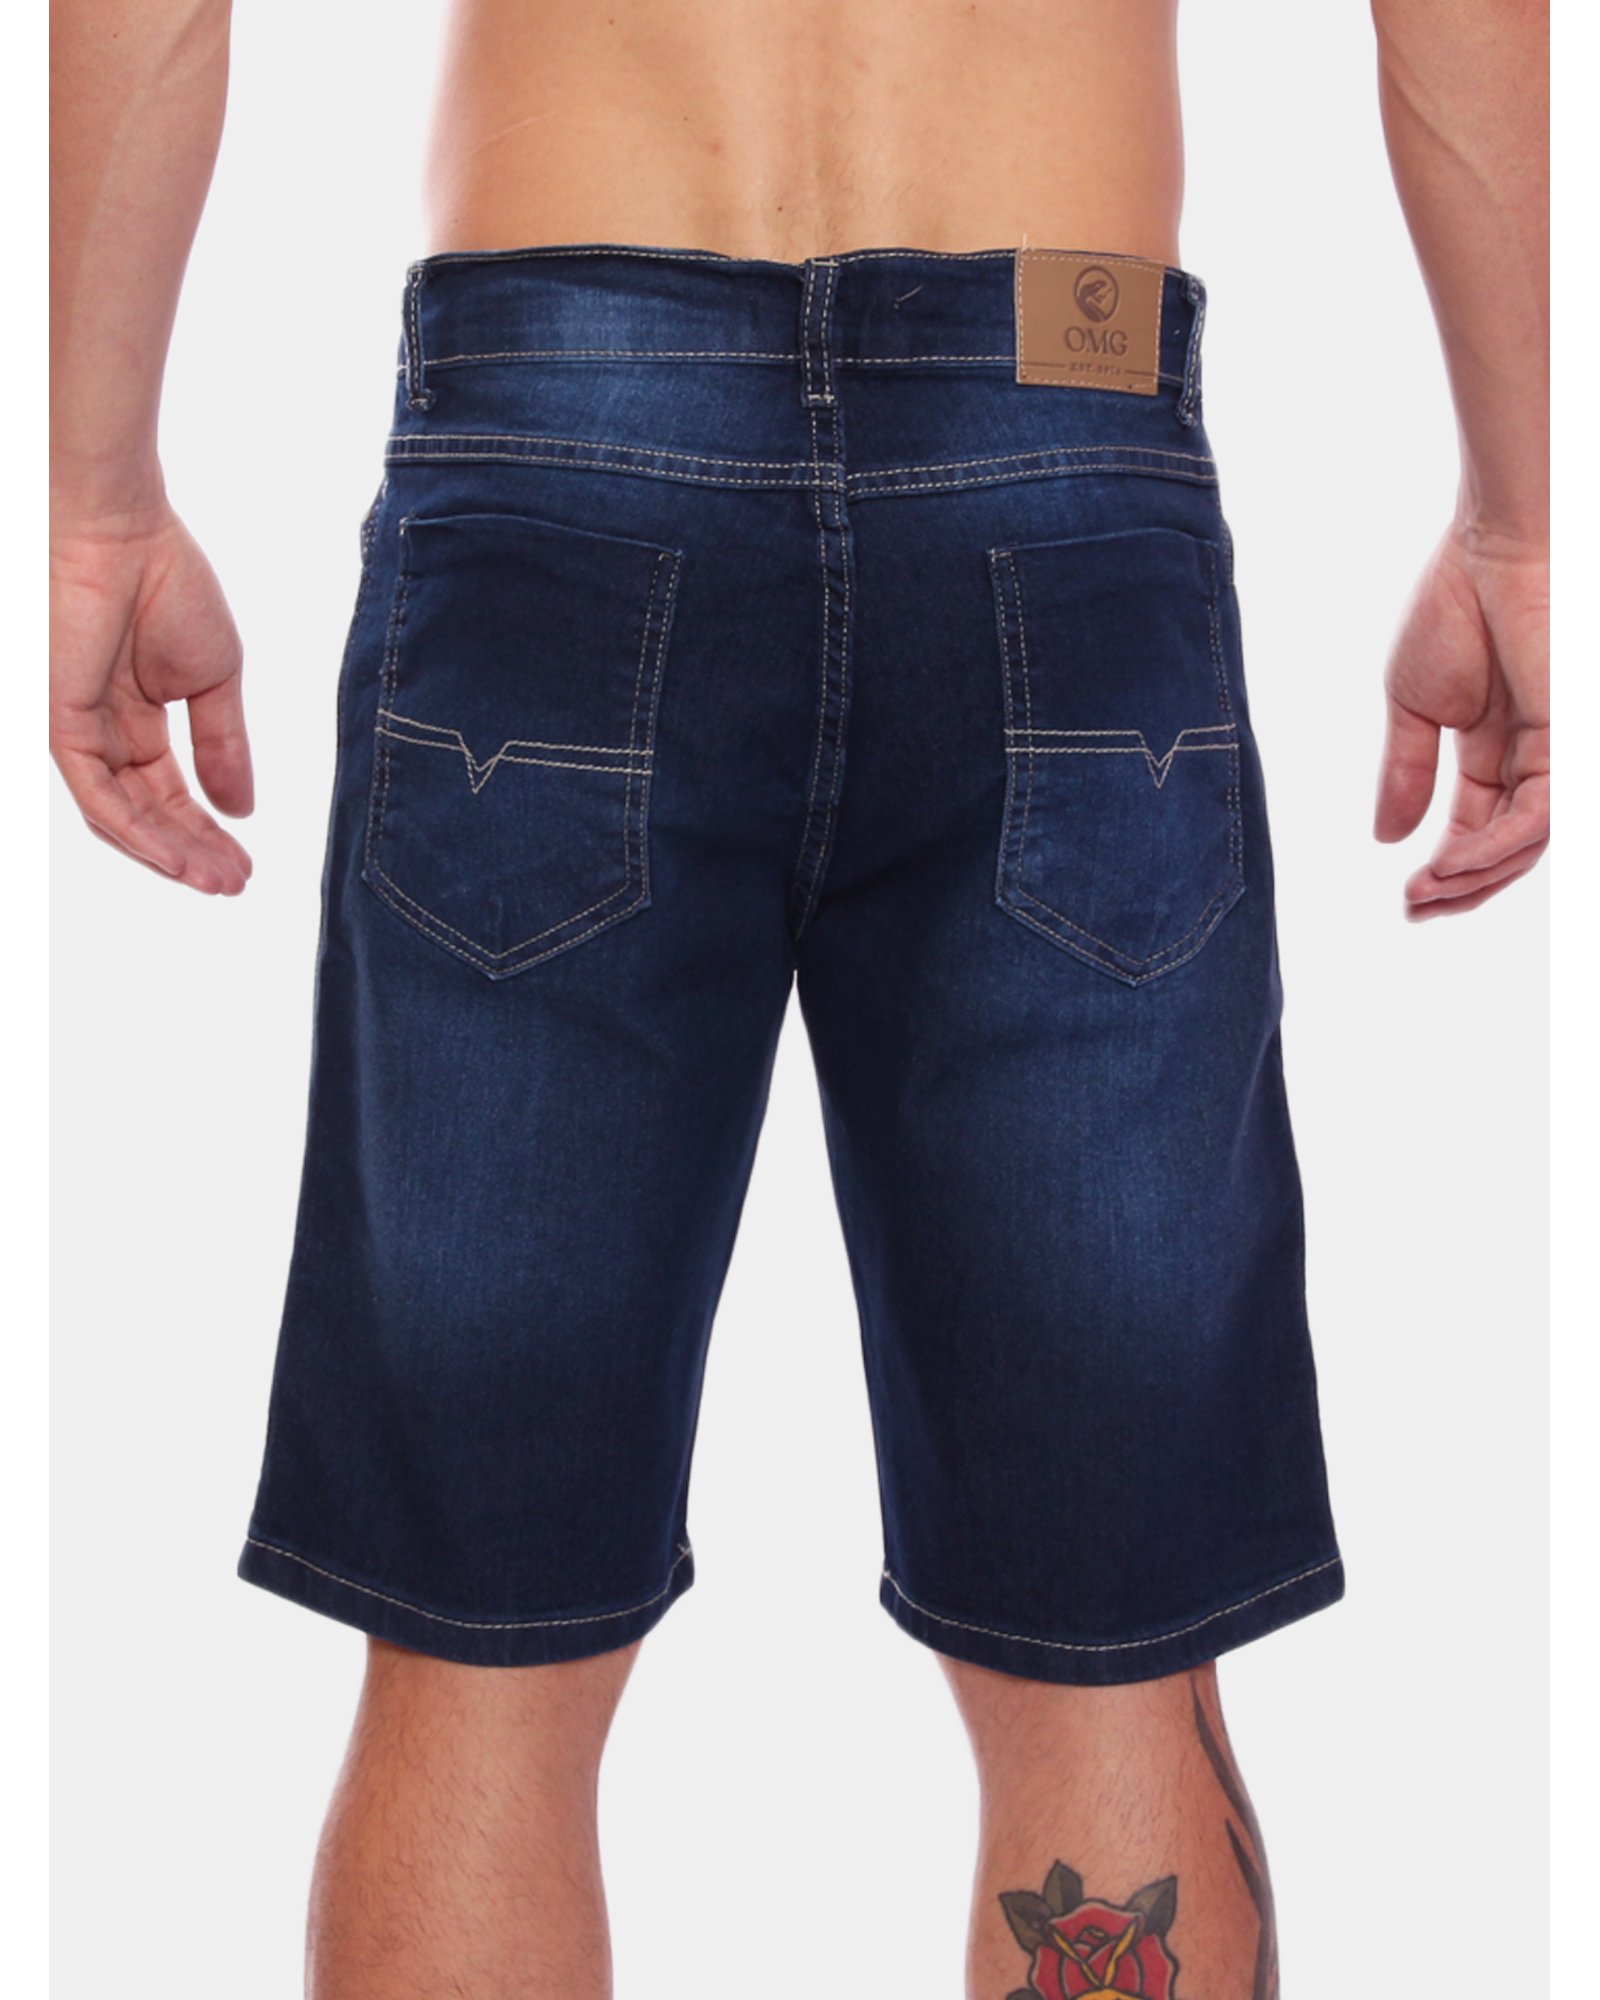 Bermuda masculina jeans escuro com lycra Ref: 0027